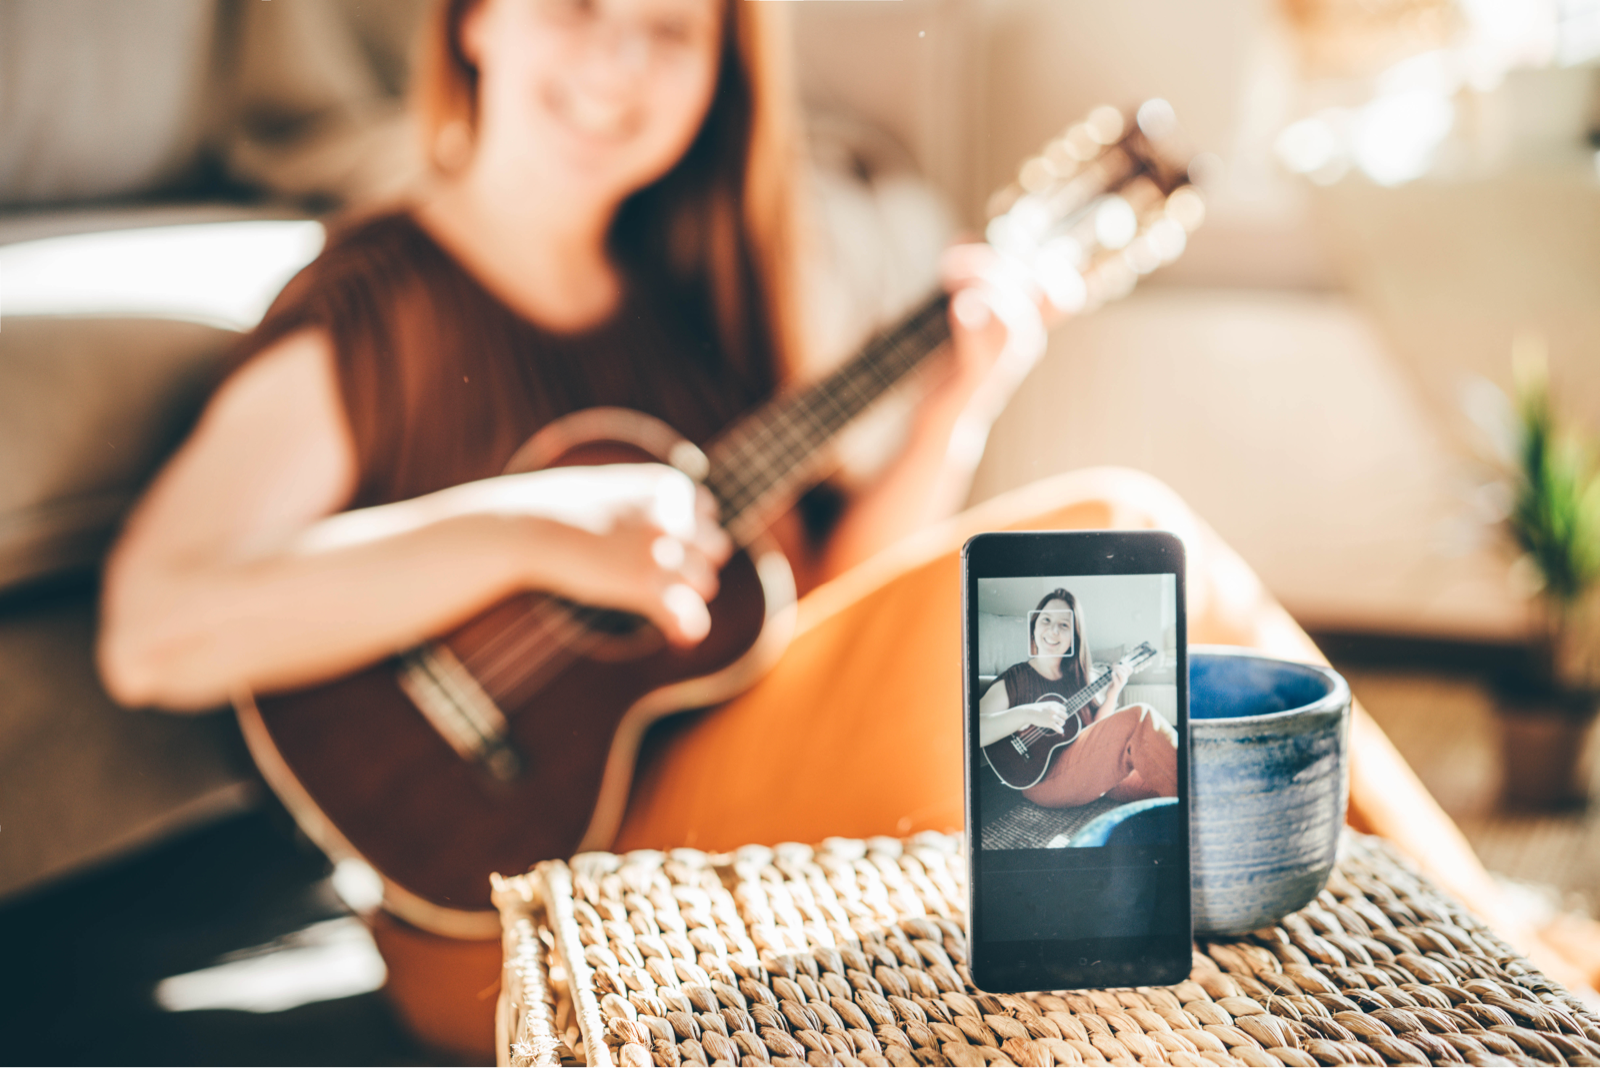 カップにスマートフォンを立てかけて、ギター演奏を動画撮影する女性